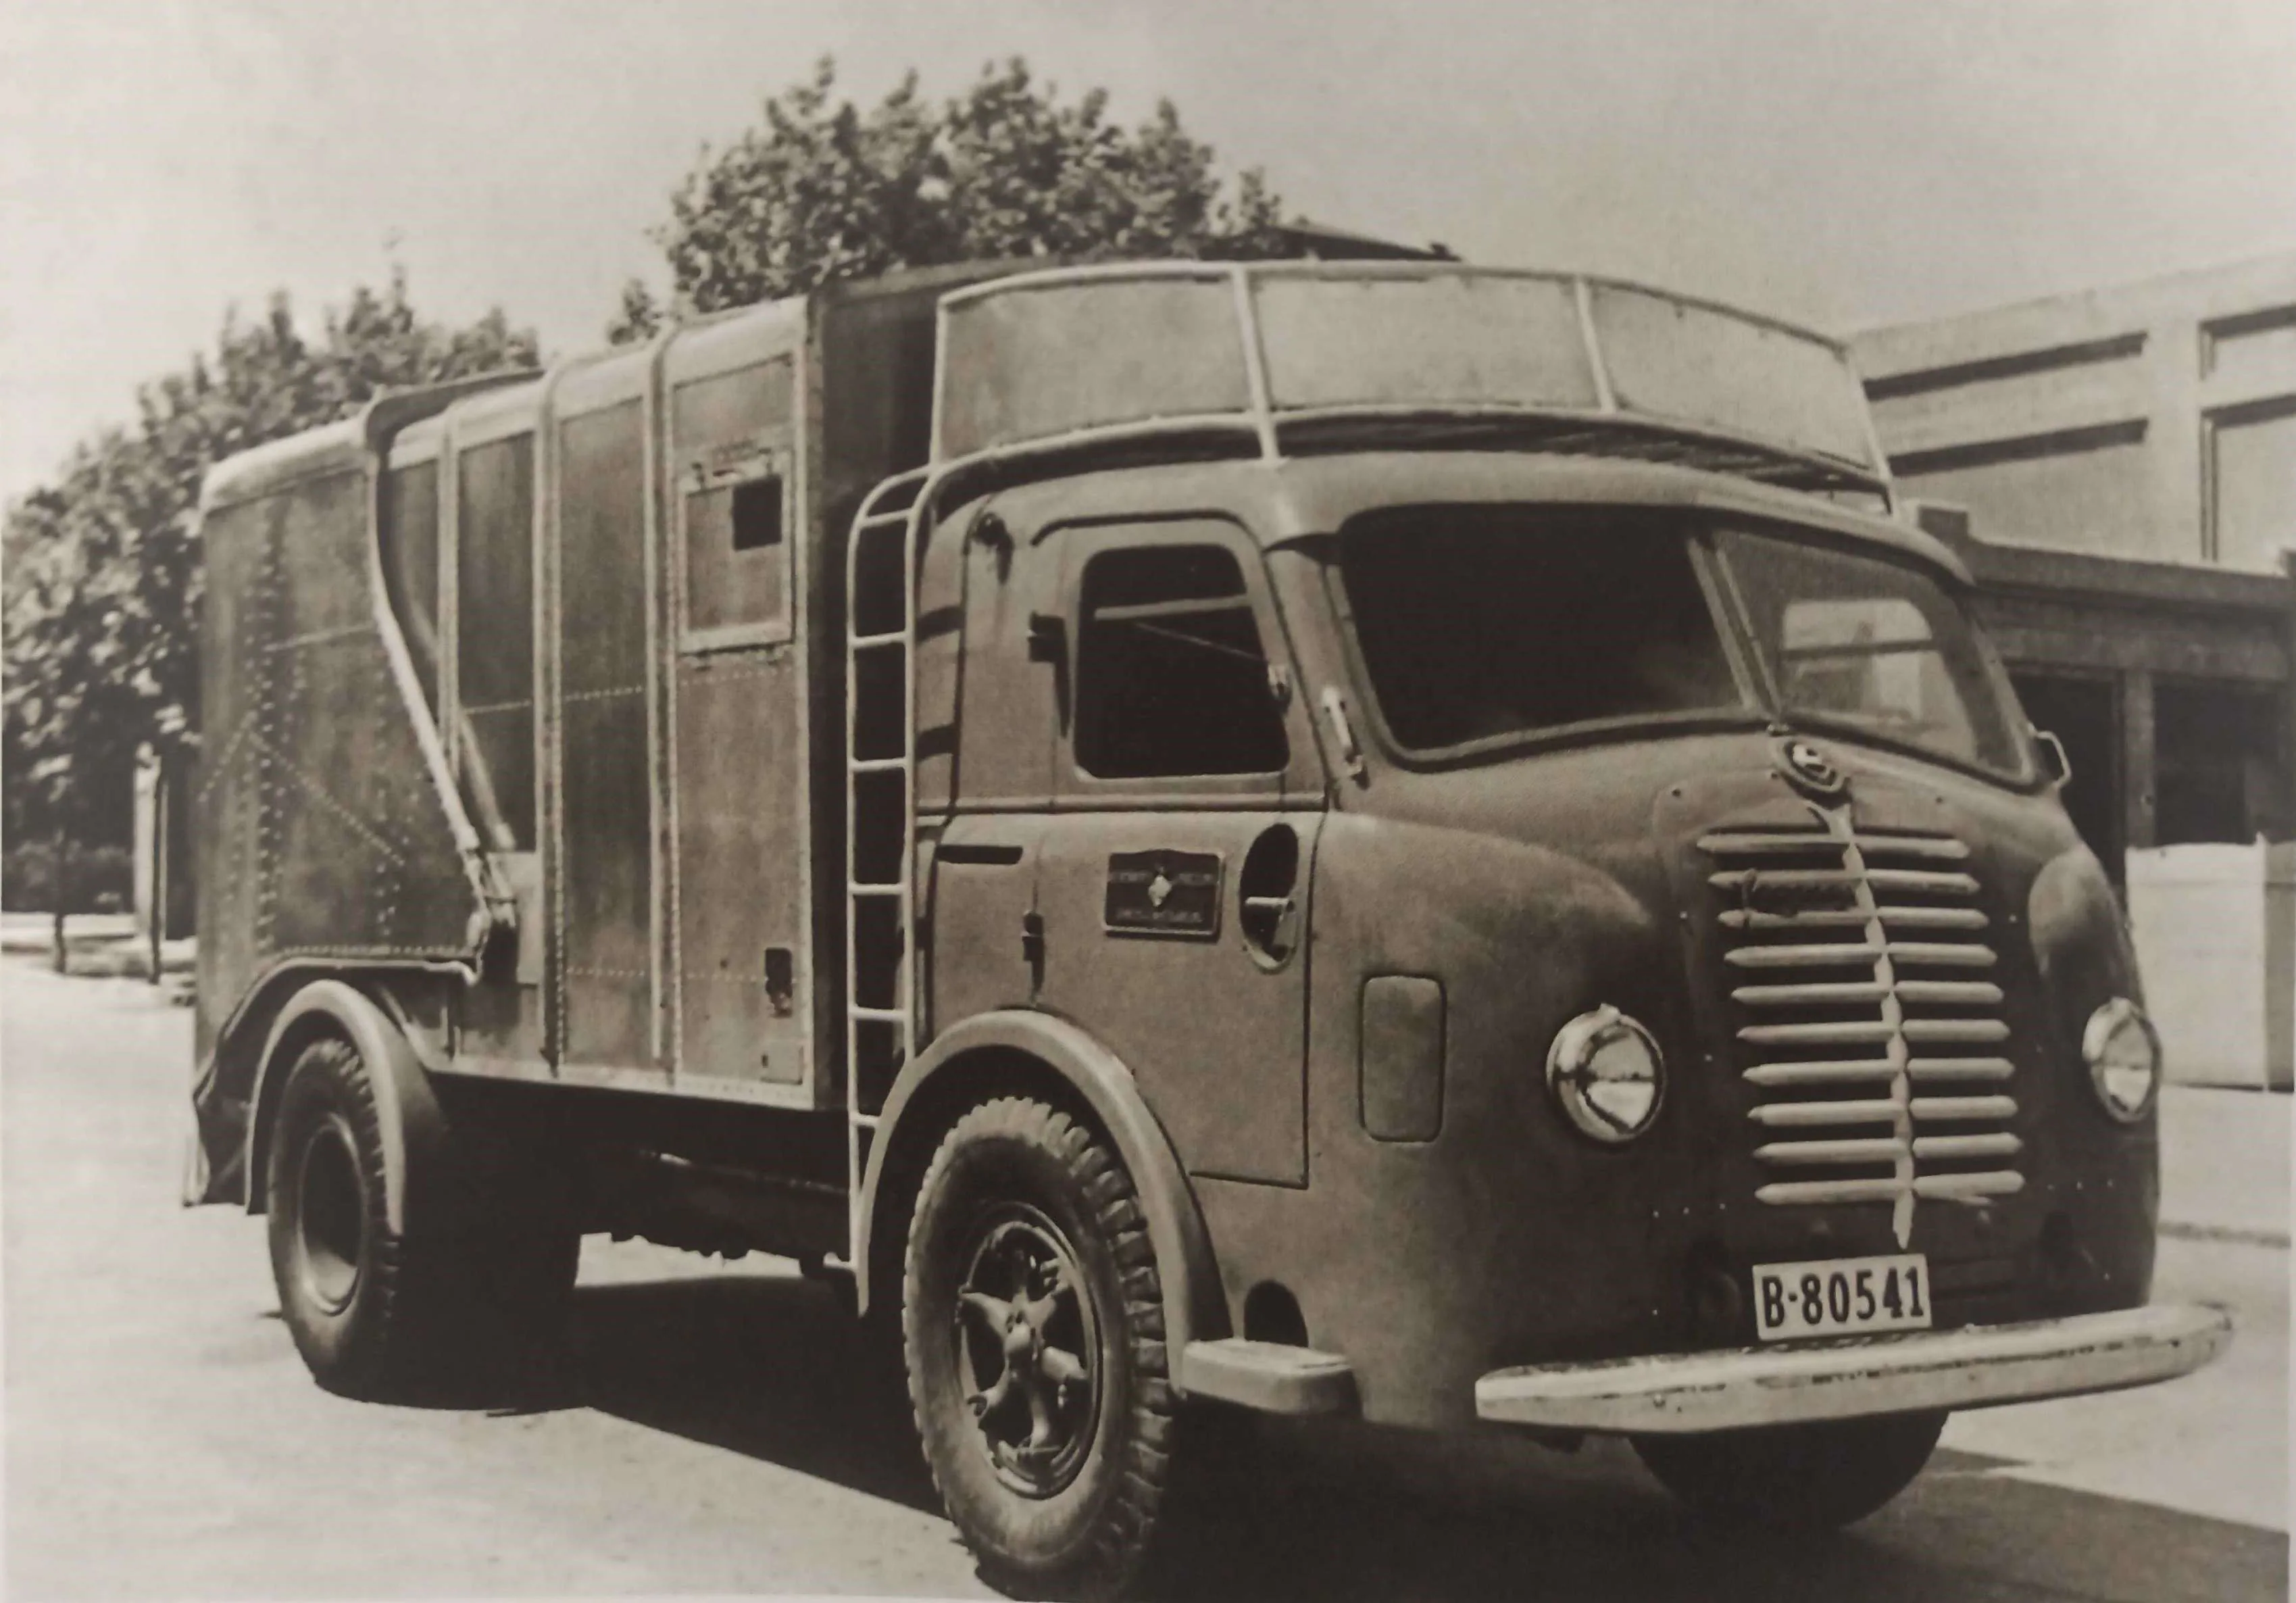 Pegaso II. A finales de 1947 salieron las primeras unidades del Pegaso II de la fábrica de  Barcelona con su moderna cabina chata, heredada del Hispano-Suiza 66-D. Su  novedad y fuerte diferencia sobre el parque de camiones existente en España hizo que  Pegaso se asimilase al nuevo concepto de cabina adelantada (cabina chata), hasta el  punto que por muchos años los camiones de cabina adelantada, de cualquier marca,  se les conocía por “tipo Pegaso”. El Pegaso II Z-203 tenía una potencia real de 110  CV, 6 cilindros y una velocidad de 72km/h.